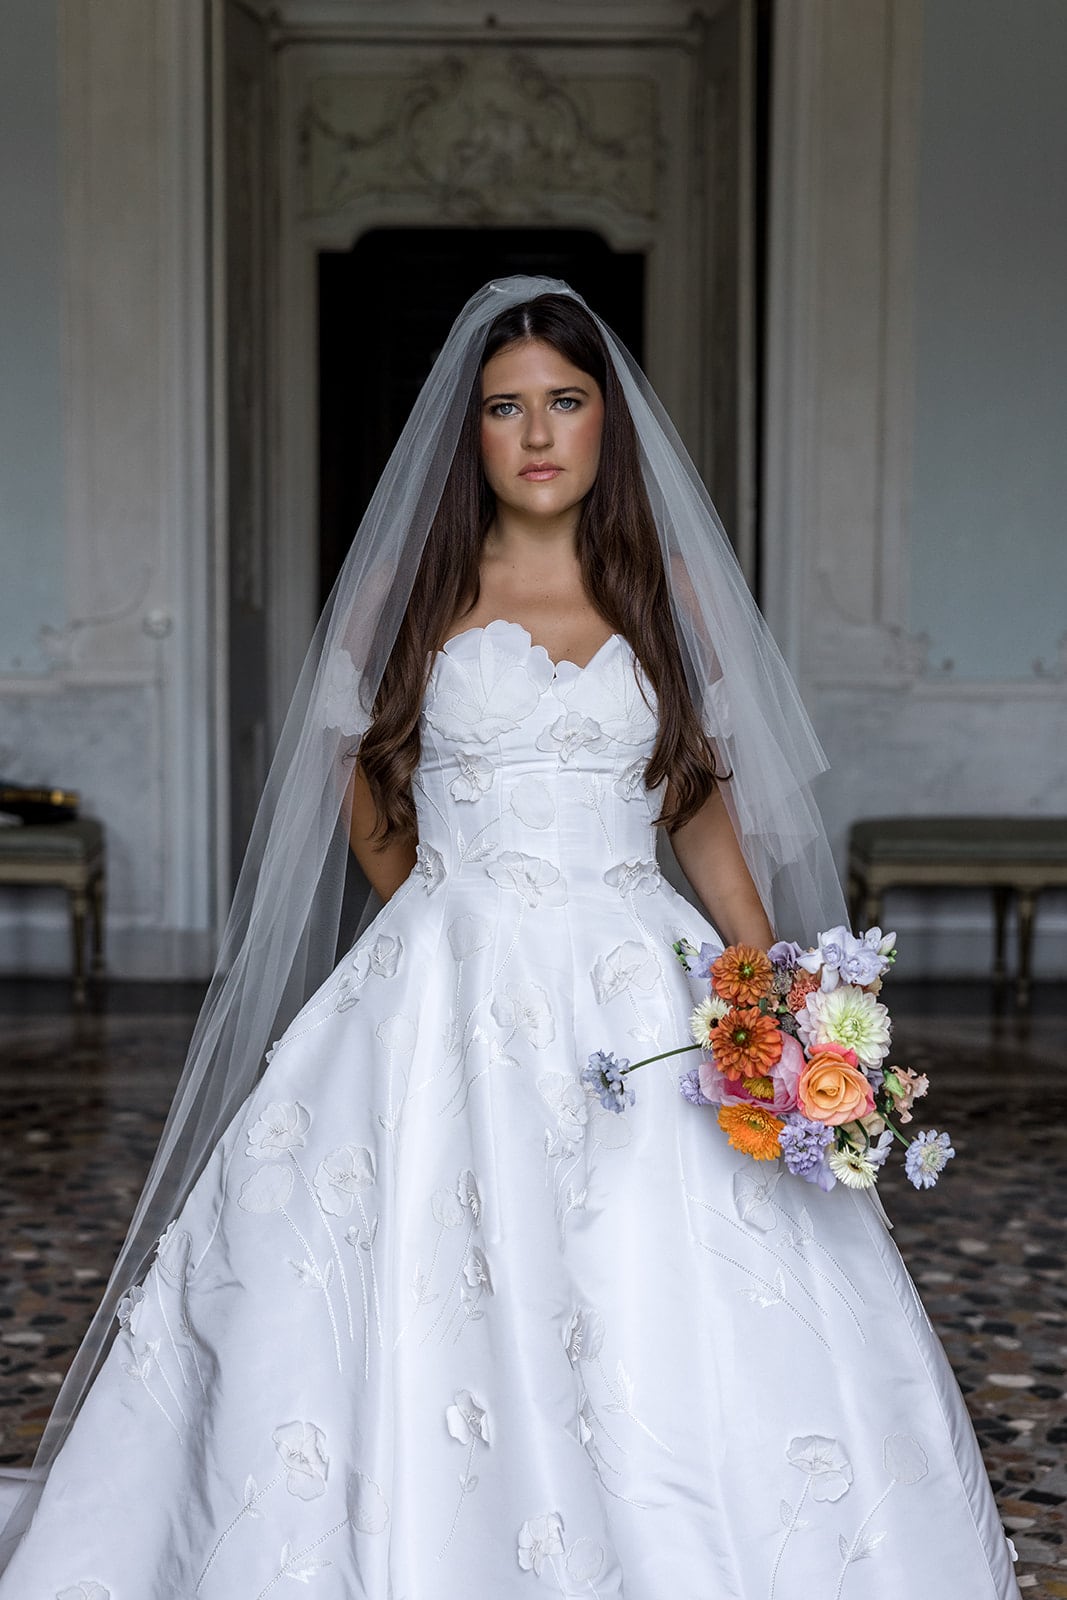 Bridal portrait inside Villa Sola Cabiati, Lake Como